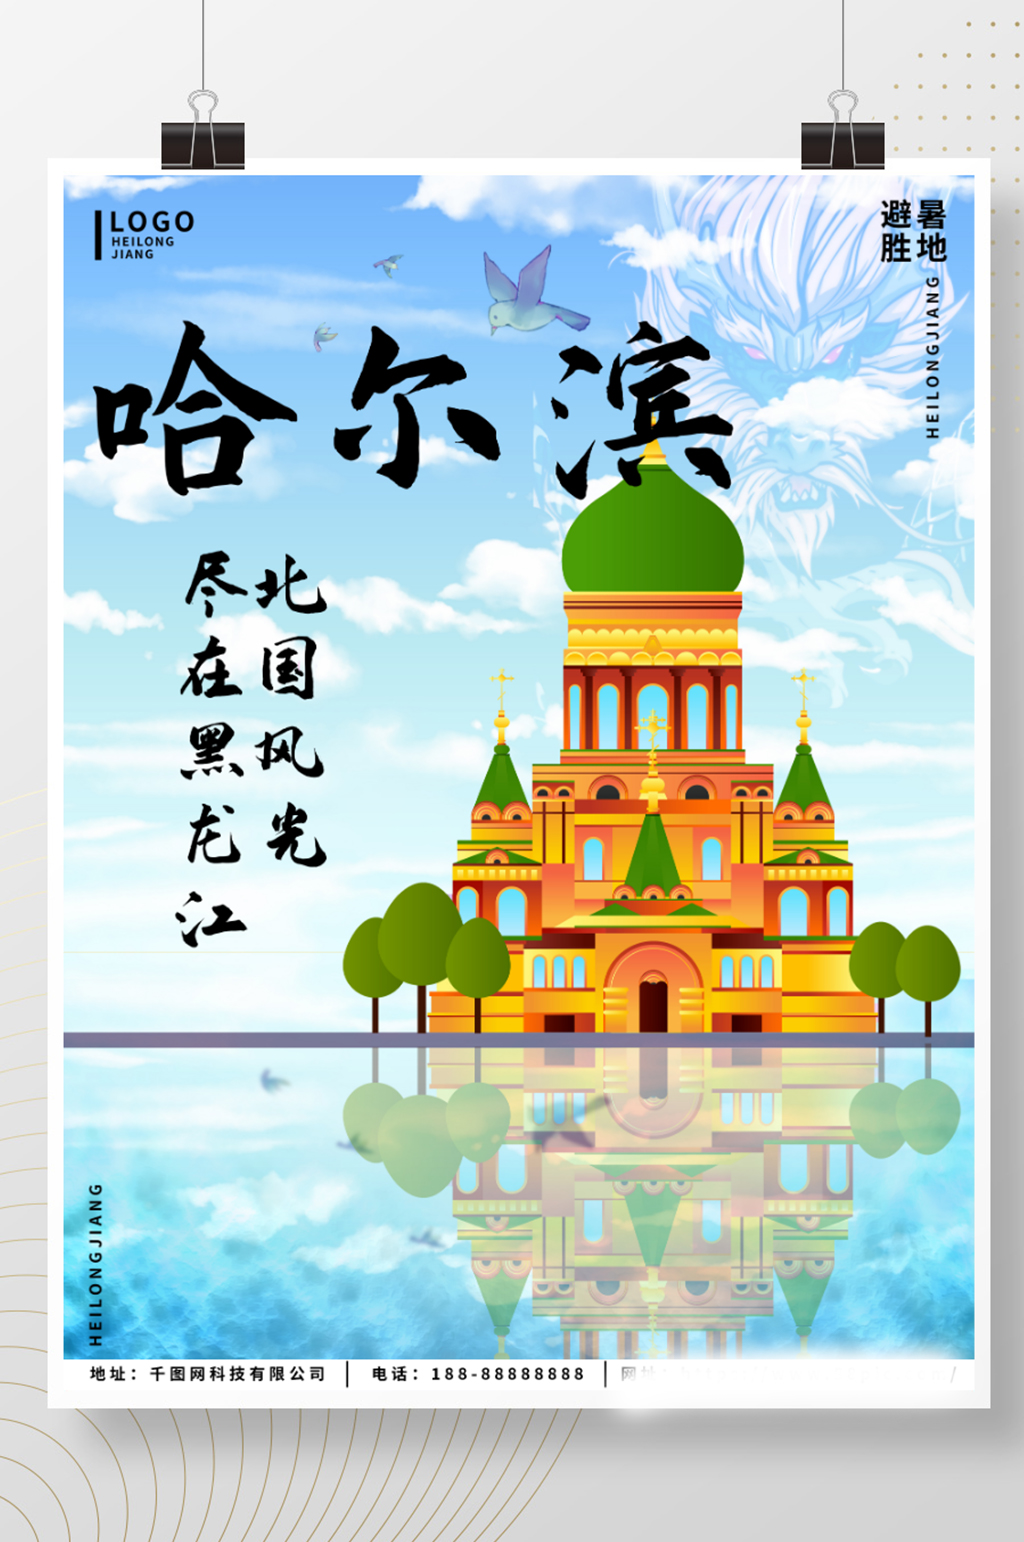 原创黑龙江哈尔滨避暑胜地旅游海报